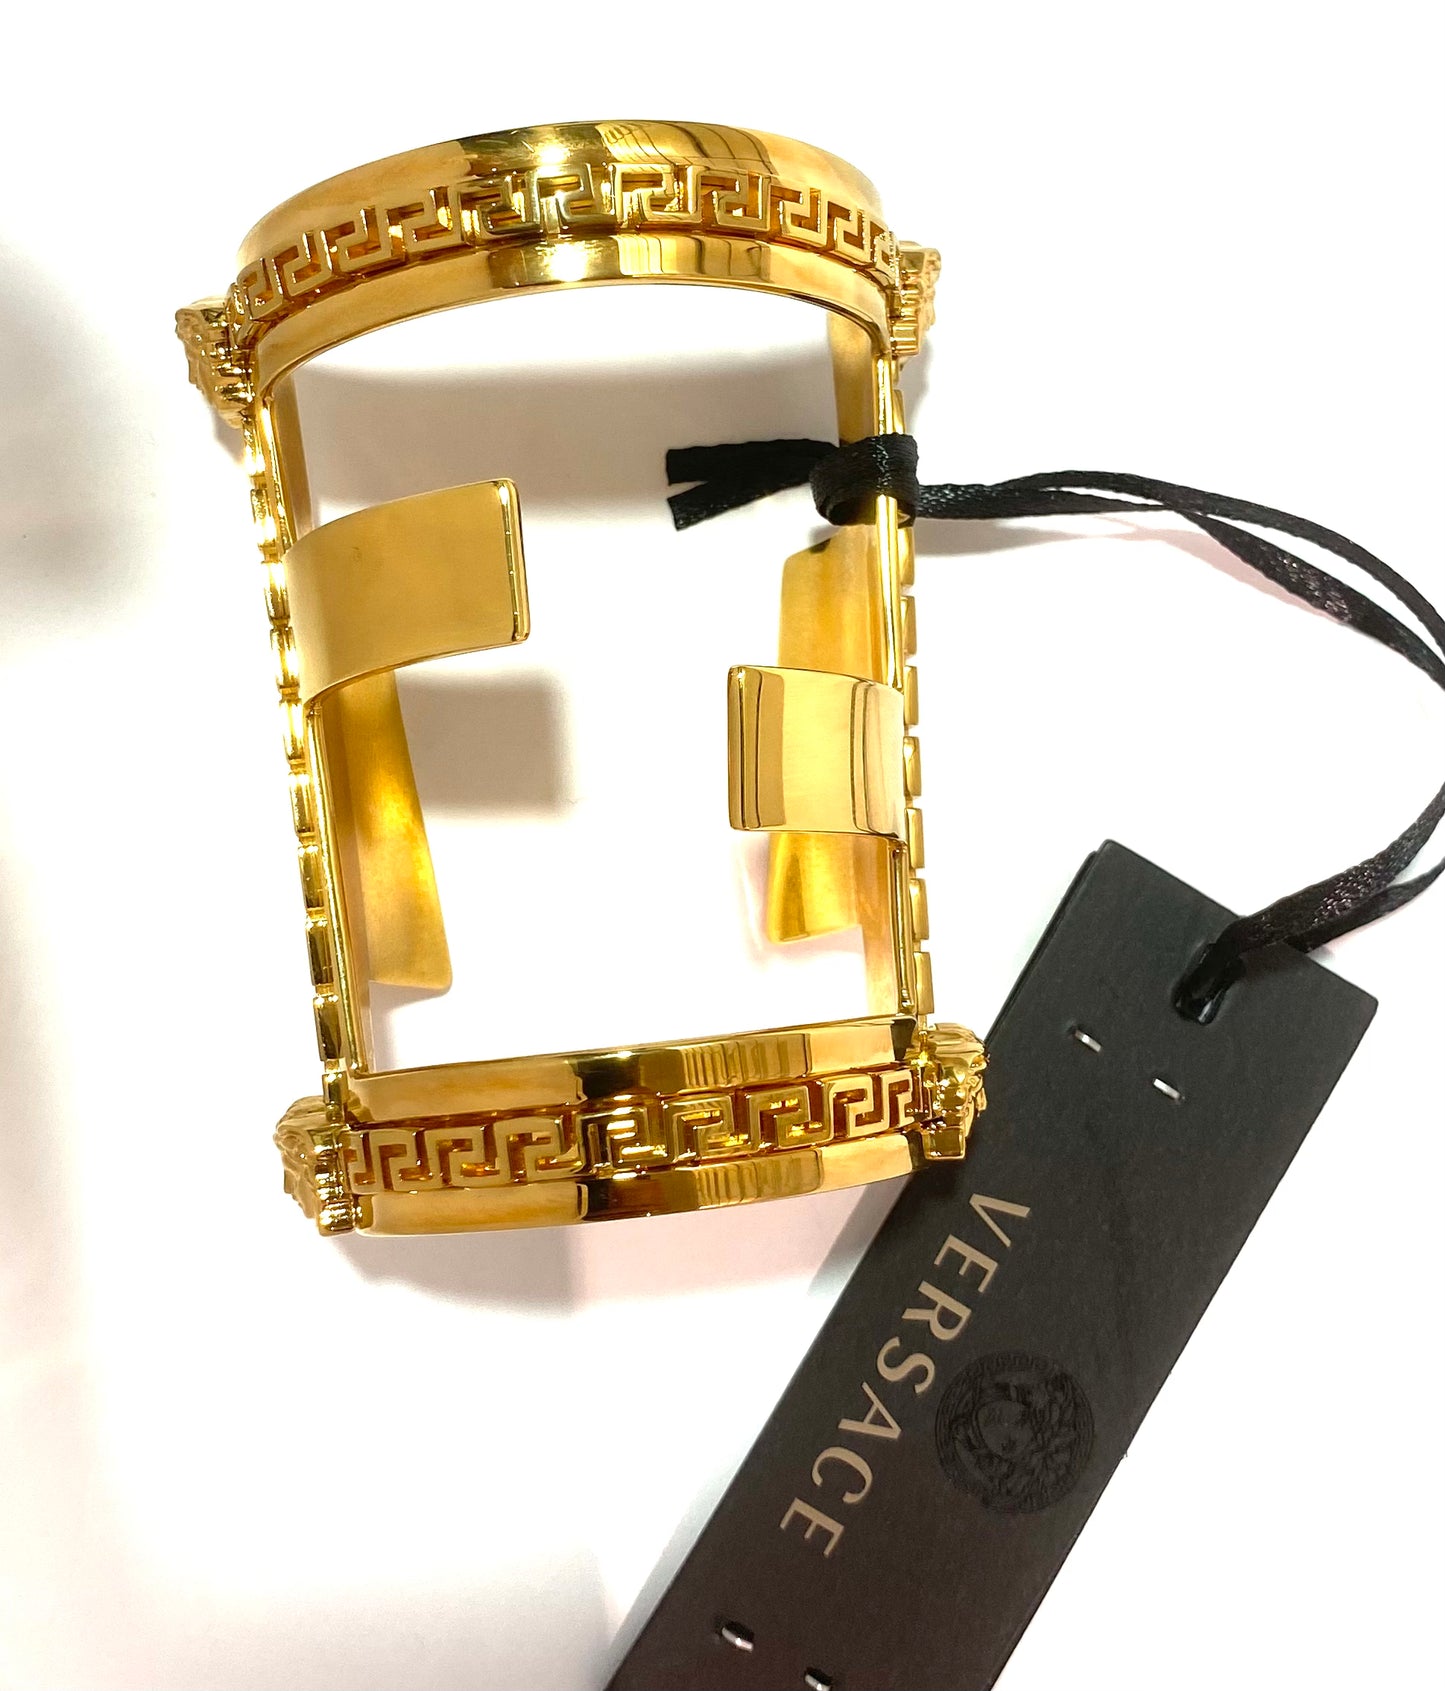 Fendace golden greek + double F & Medusa Fendi x Versace sz S New